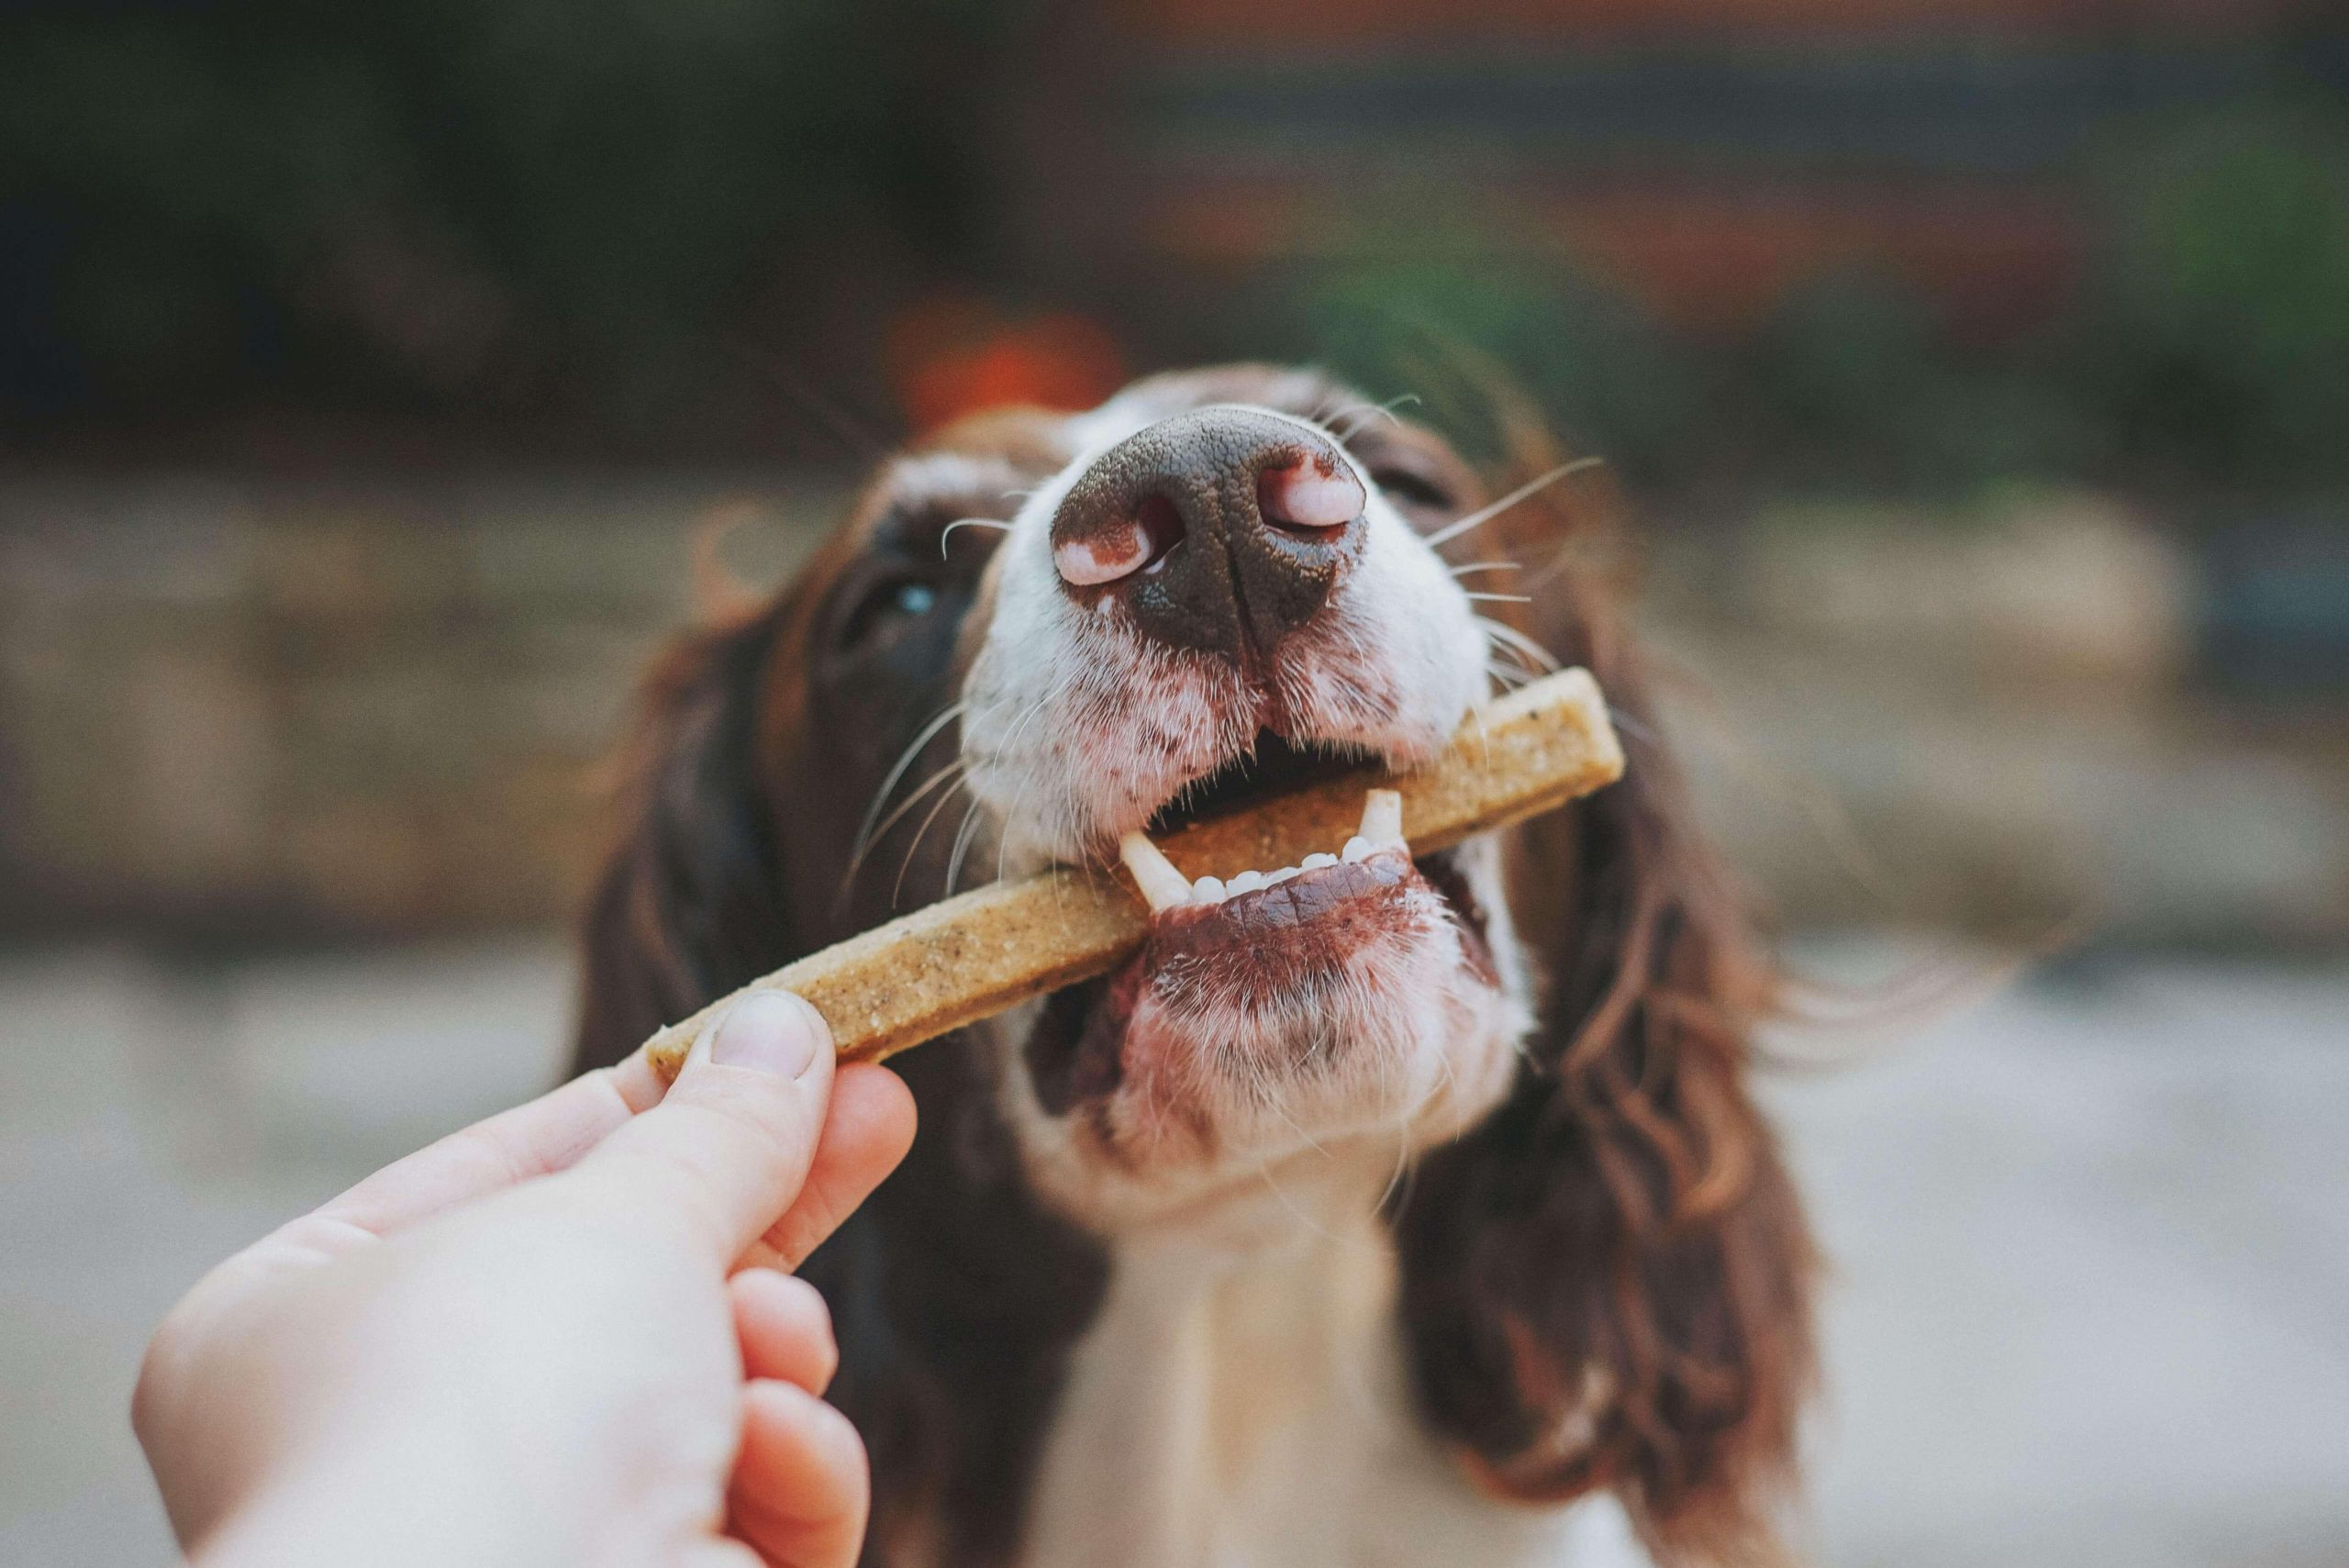 Kokybiškas šunų maistas – kaip pasirinkti ir ko vengti? /